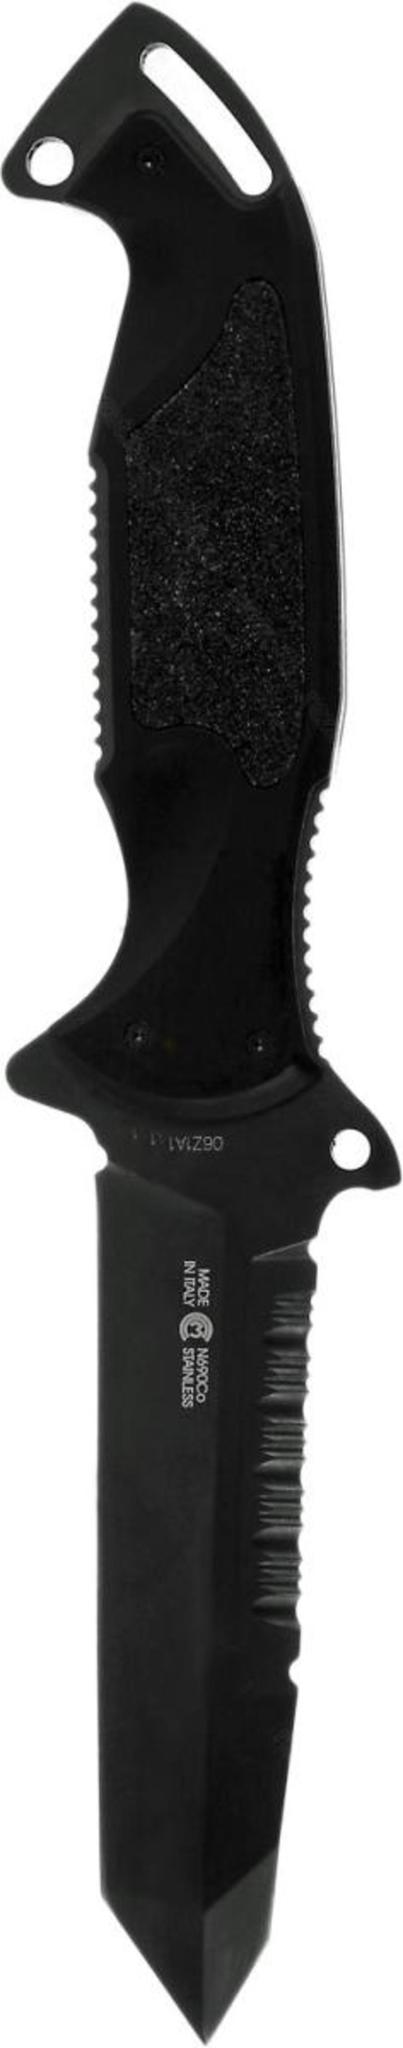 Нож с фиксированным клинком Remington Зулу I (Zulu) RM\895FT DLC - фото 2